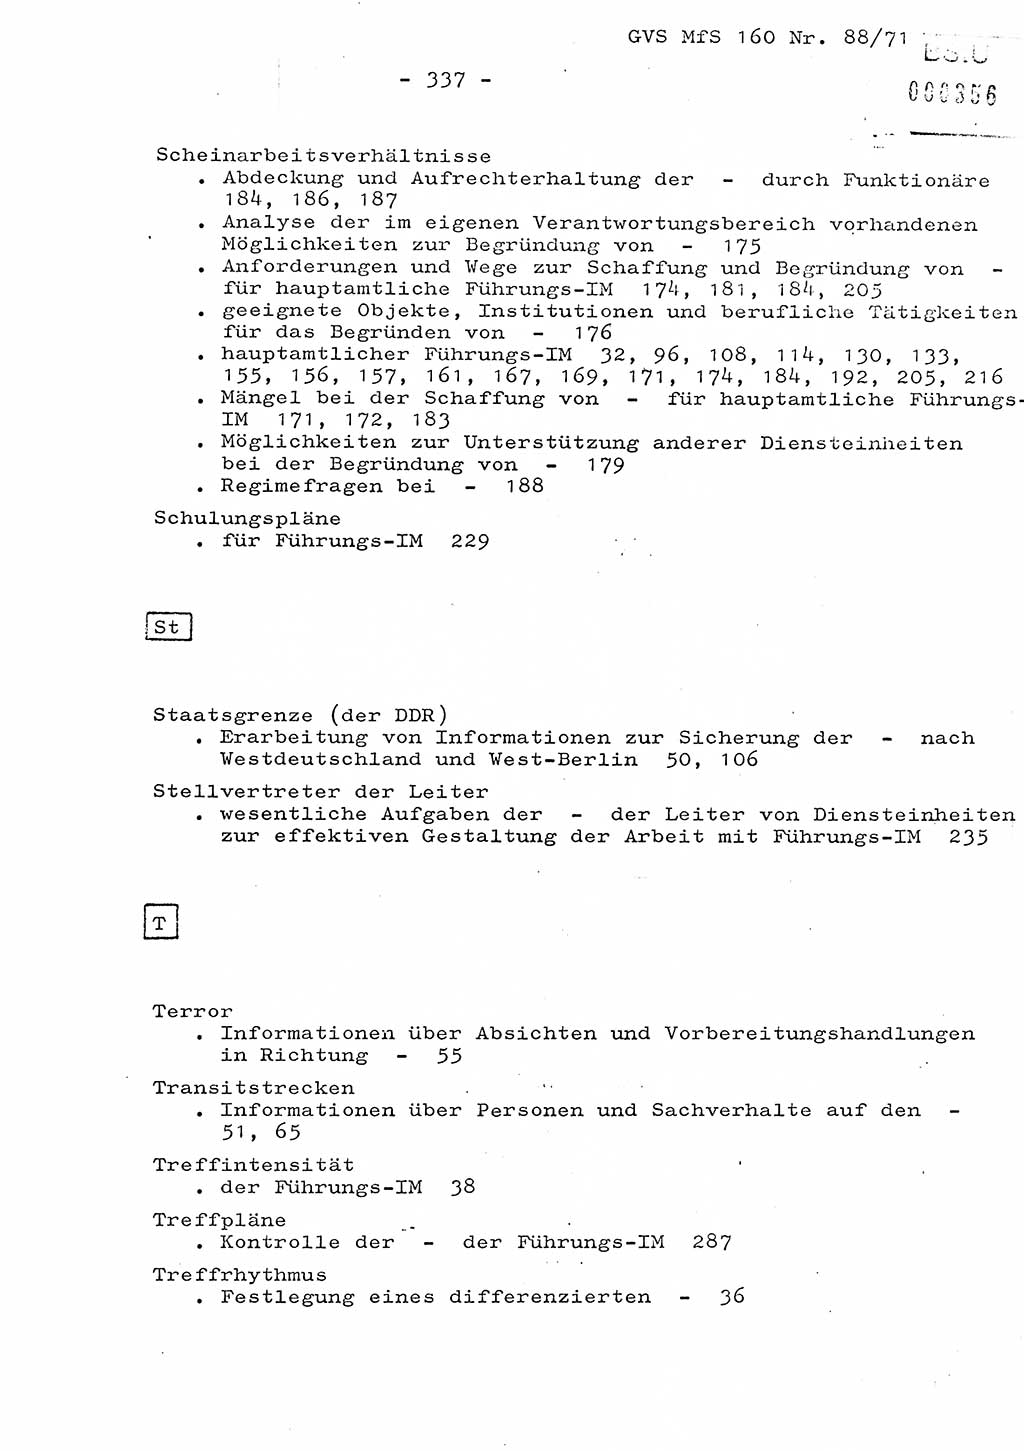 Dissertation Oberstleutnant Josef Schwarz (BV Schwerin), Major Fritz Amm (JHS), Hauptmann Peter Gräßler (JHS), Ministerium für Staatssicherheit (MfS) [Deutsche Demokratische Republik (DDR)], Juristische Hochschule (JHS), Geheime Verschlußsache (GVS) 160-88/71, Potsdam 1972, Seite 337 (Diss. MfS DDR JHS GVS 160-88/71 1972, S. 337)